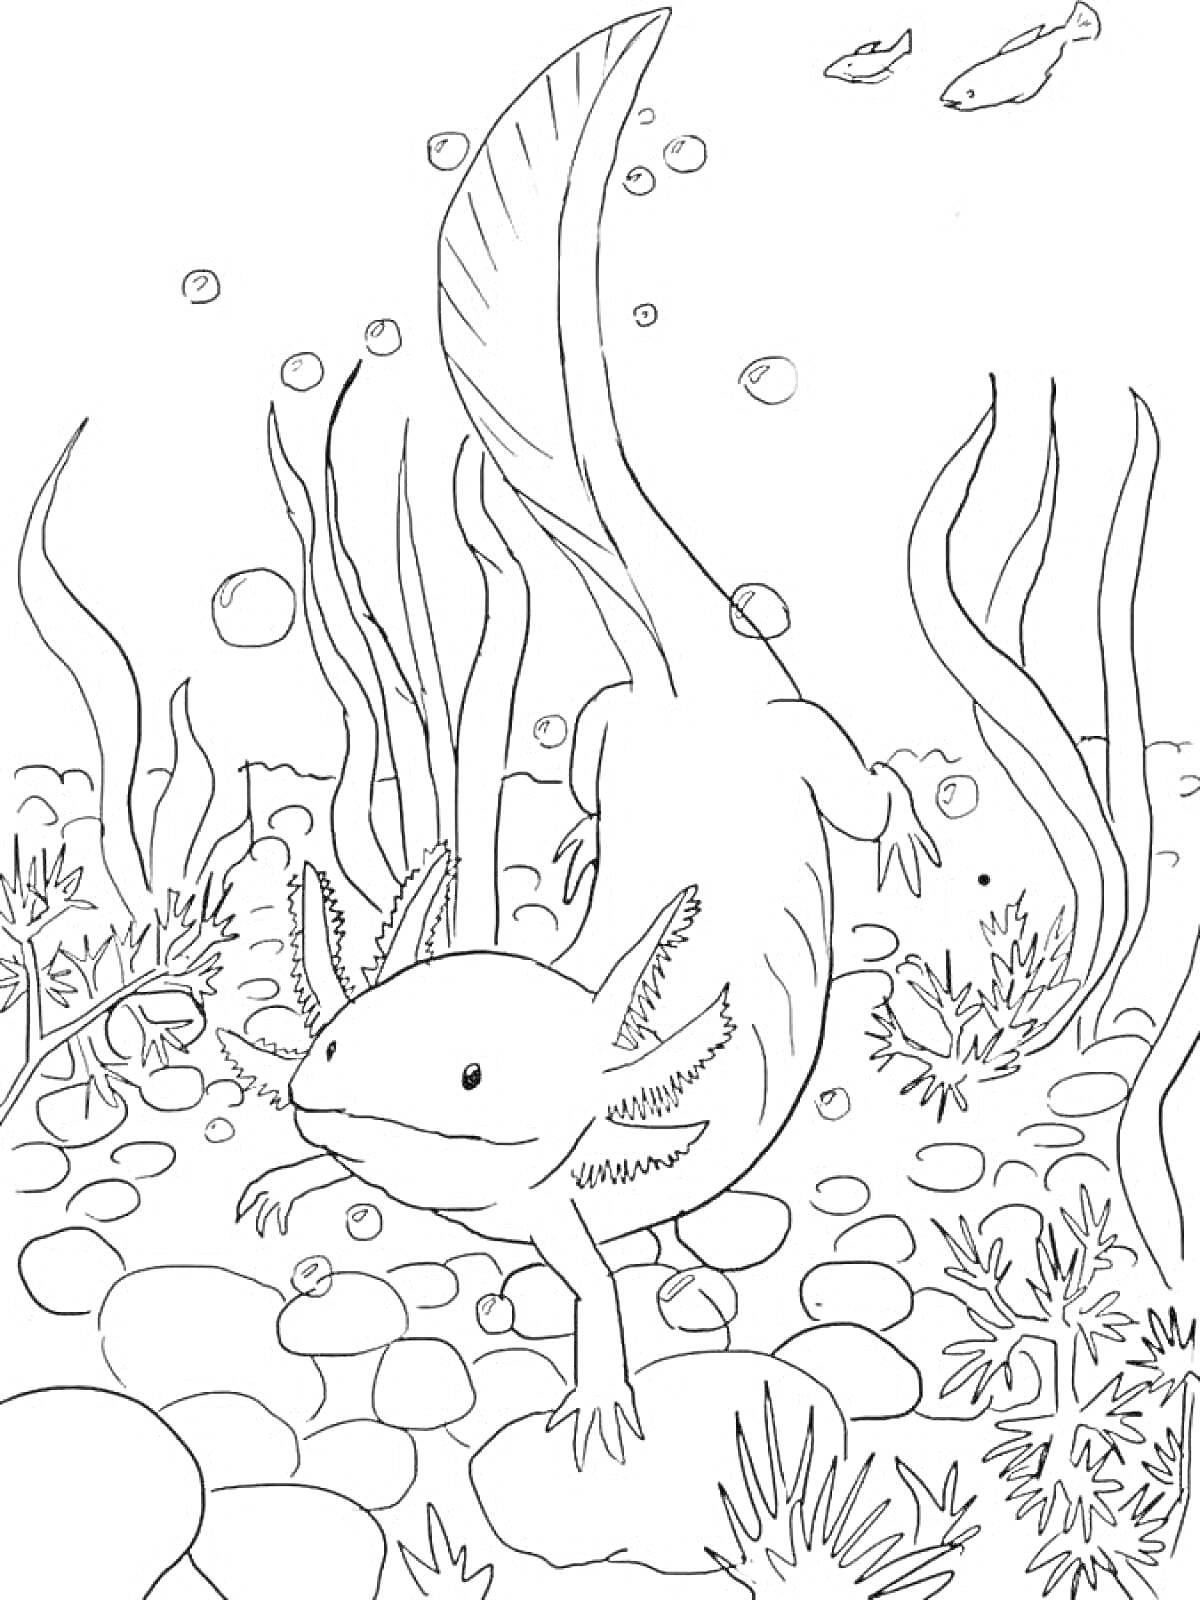 Аксолотль в подводном мире со скалами, растениями и рыбой